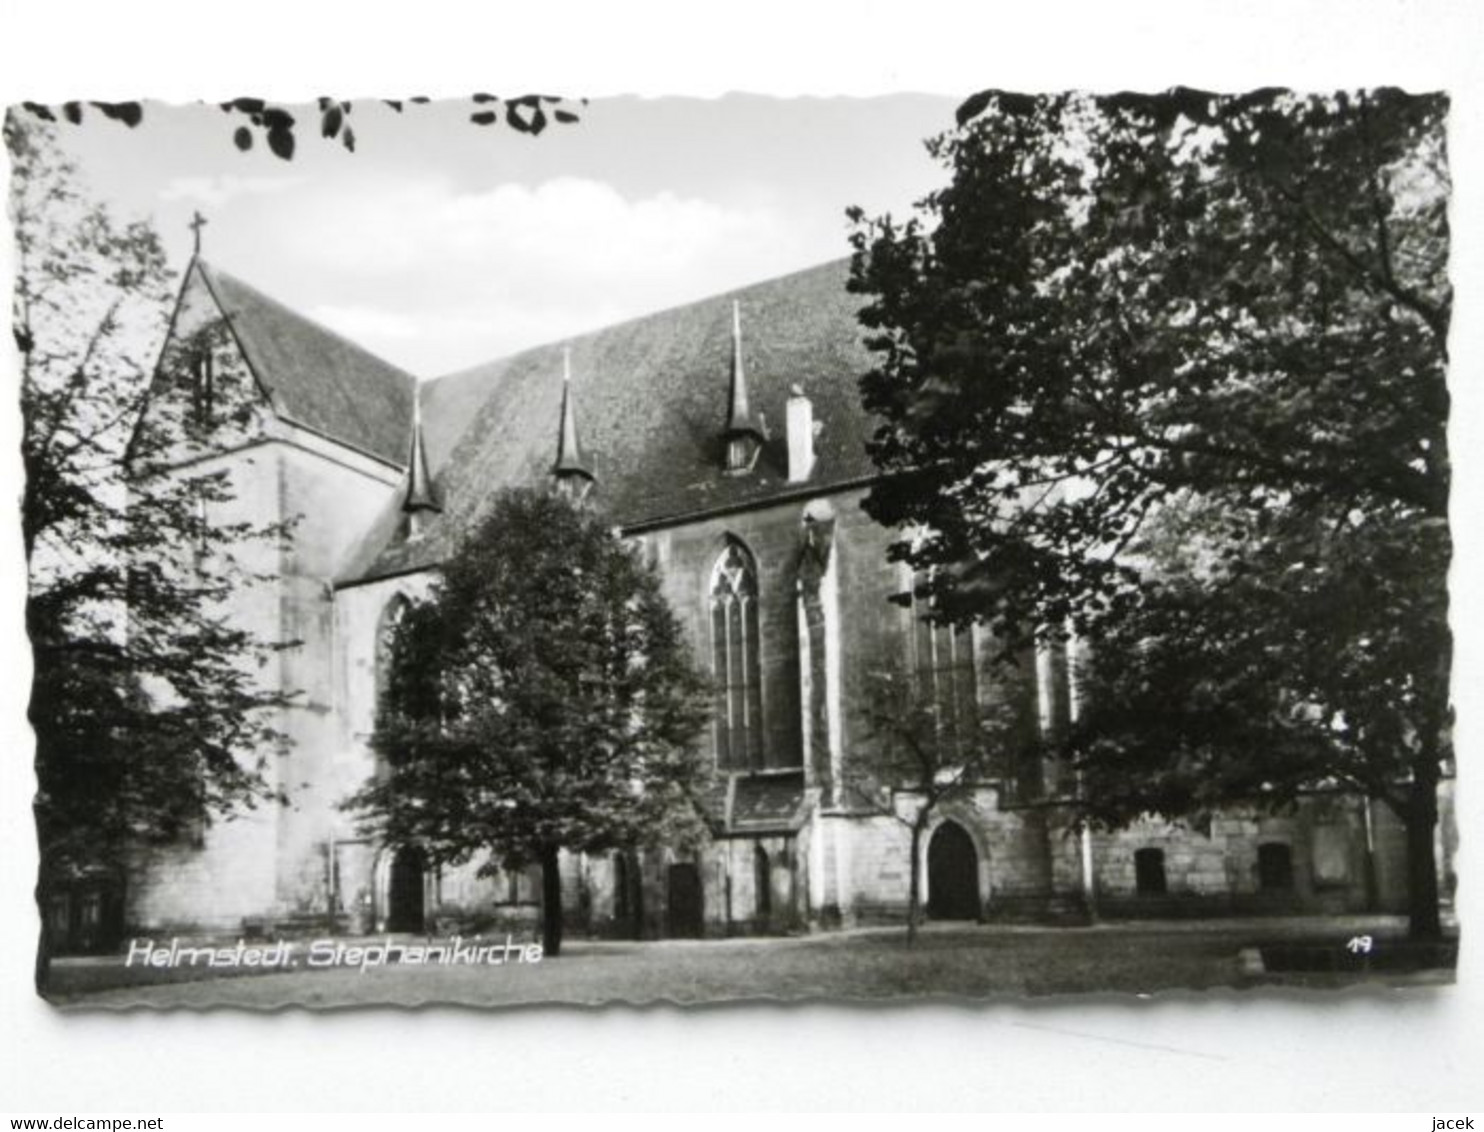 Helmstedt Church - Helmstedt